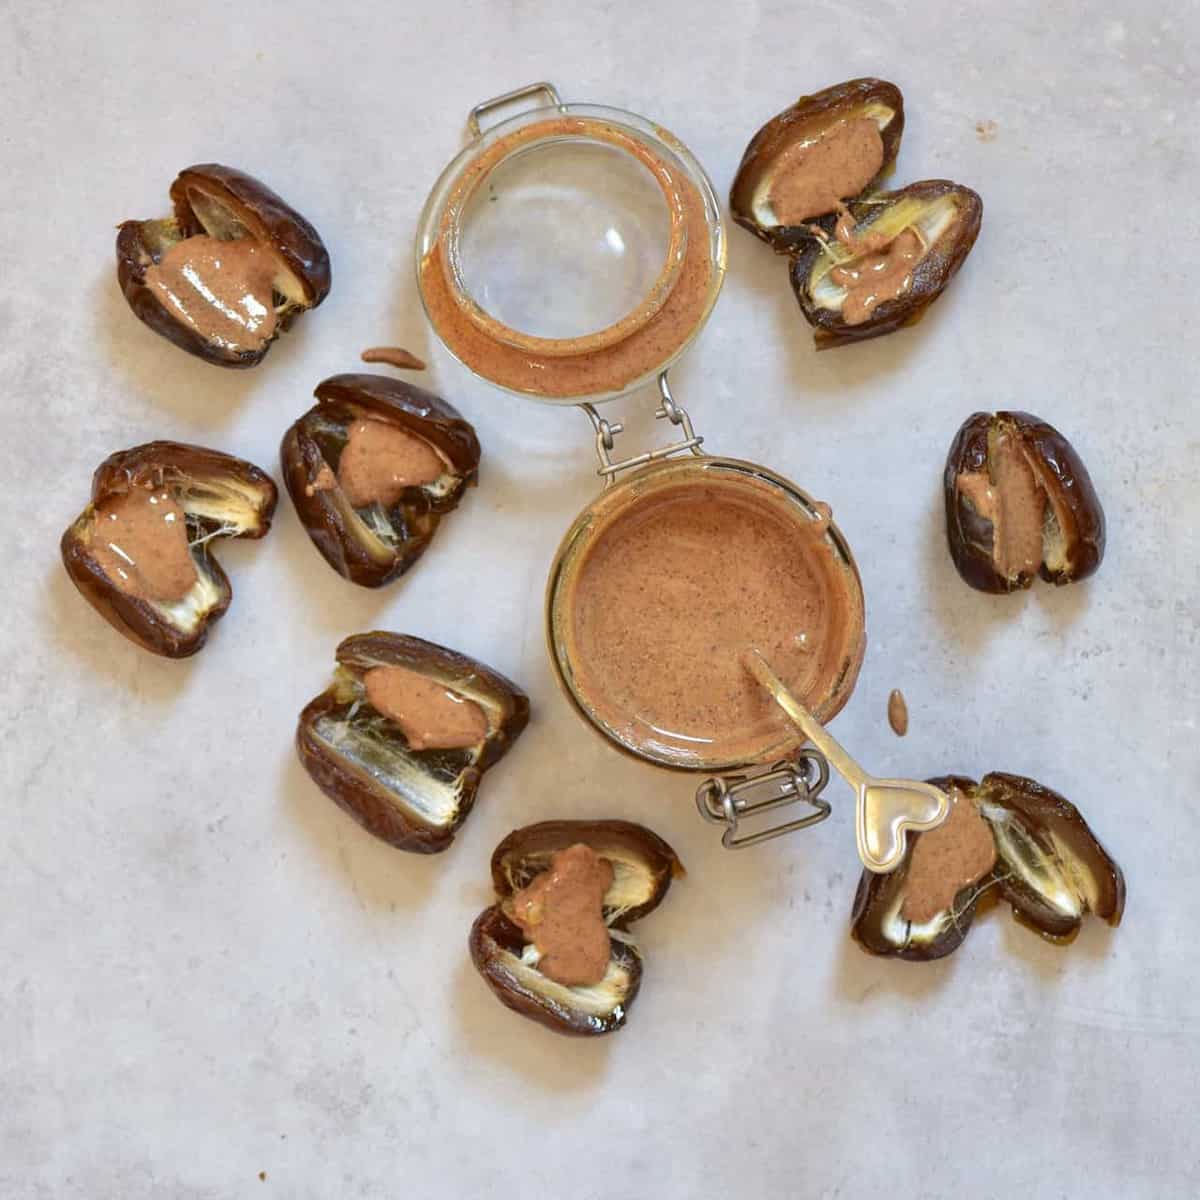 almond butter inside a date